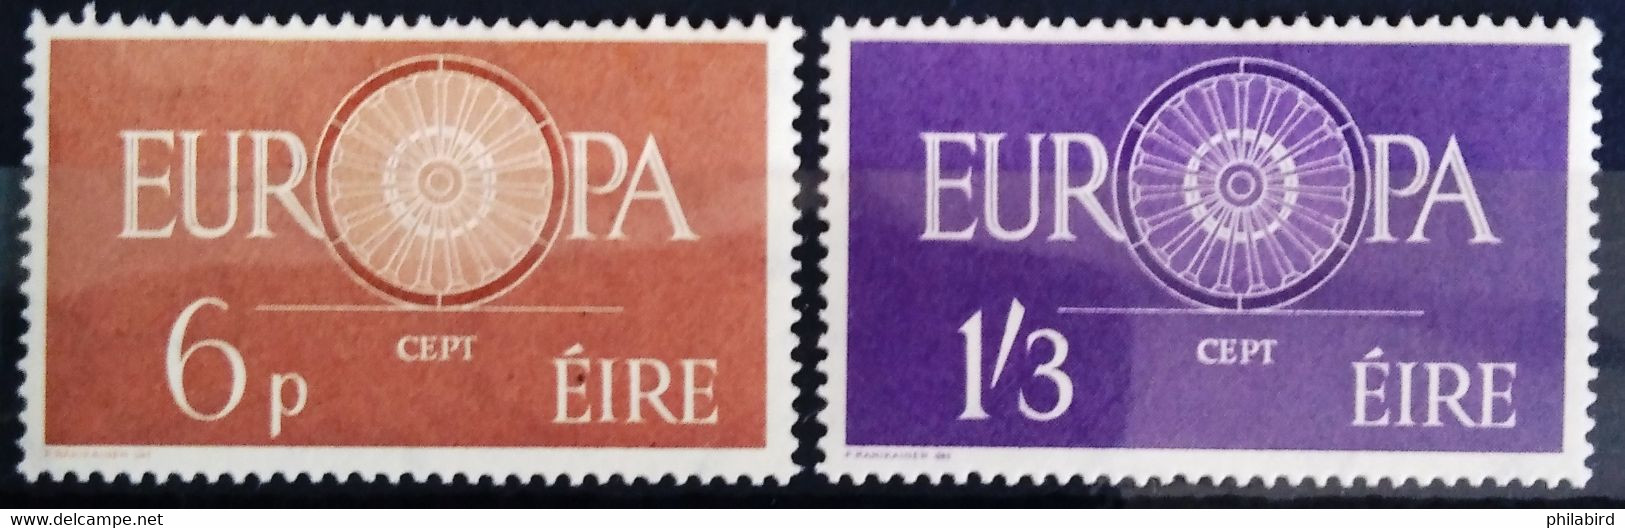 EUROPA 1960 - IRLANDE                   N° 146/147                        NEUF** - 1960